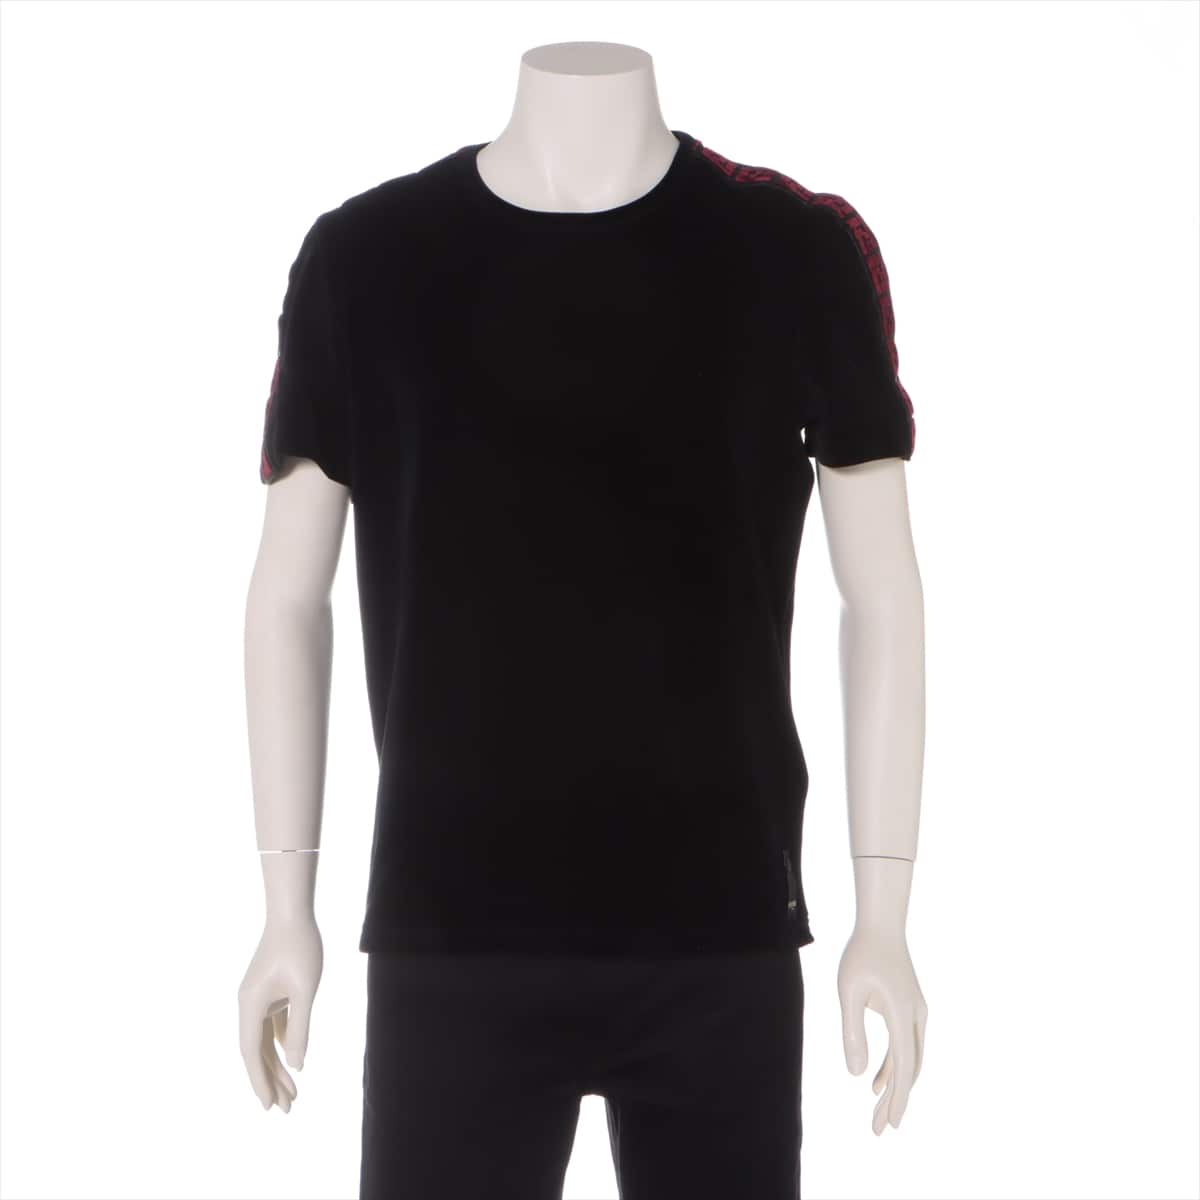 Fendi 20 years Cotton & nylon T-shirt S Men's Black